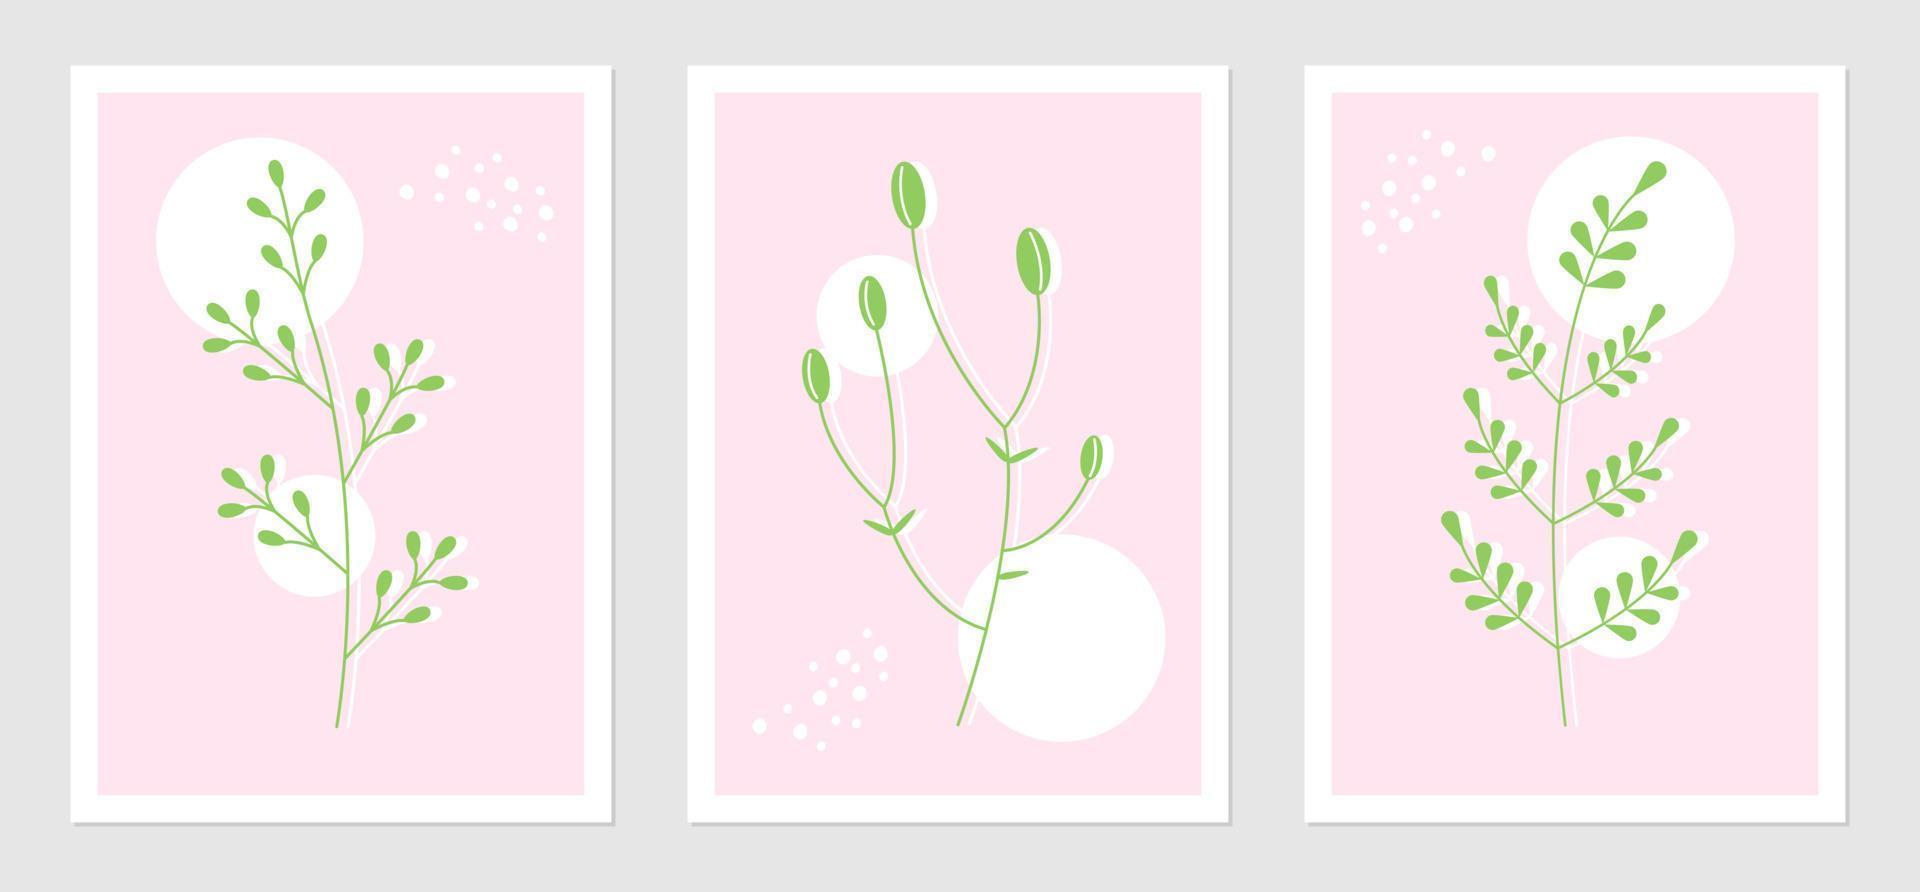 abstract posters reeks met fabriek elementen en meetkundig vormen. botanisch vector illustratie van takjes. concept voor interieur ontwerp in roze groen kleuren.